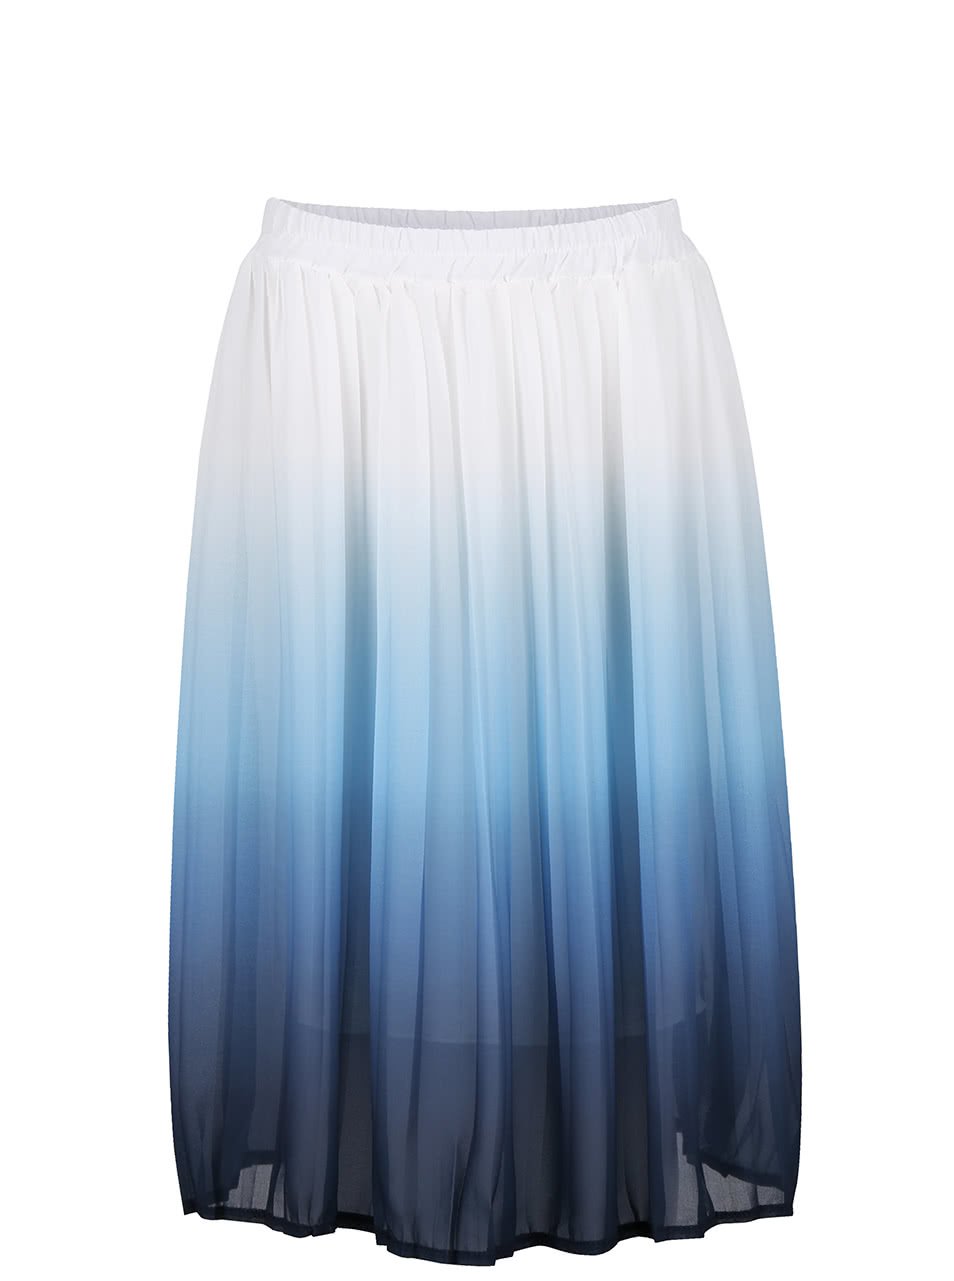 Bílo-modrá skládaná sukně s ombré efektem Alchymi Erica